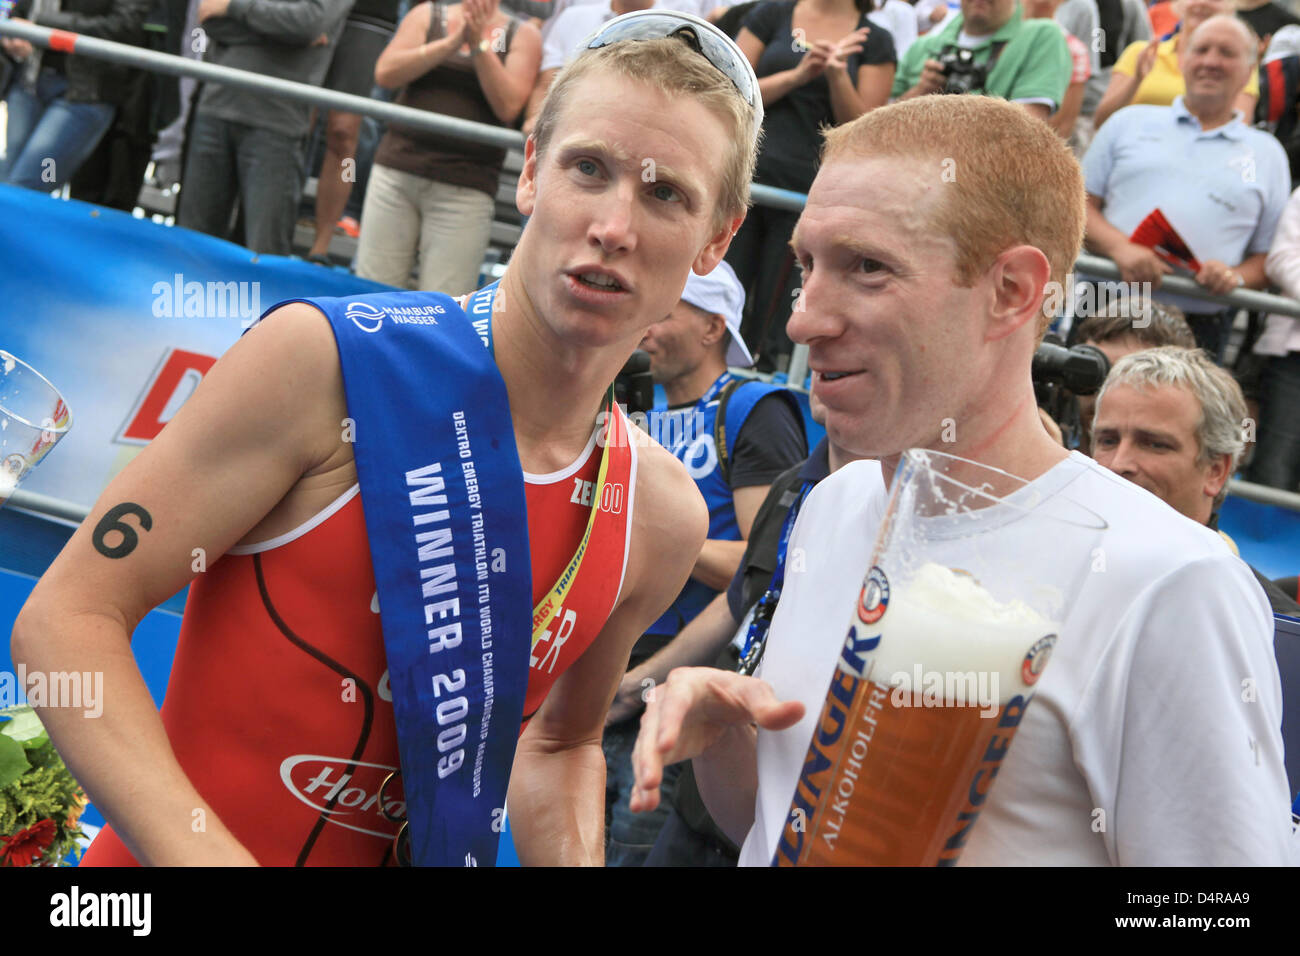 US-Gewinner Jarrod Shoemaker (L) teilt ein Bier mit seinem Landsmann Mark Fretta (R) beim ITU World Championship Series Event in Hamburg, Germany, 26. Juli 2009. Foto: Bodo Marks Stockfoto